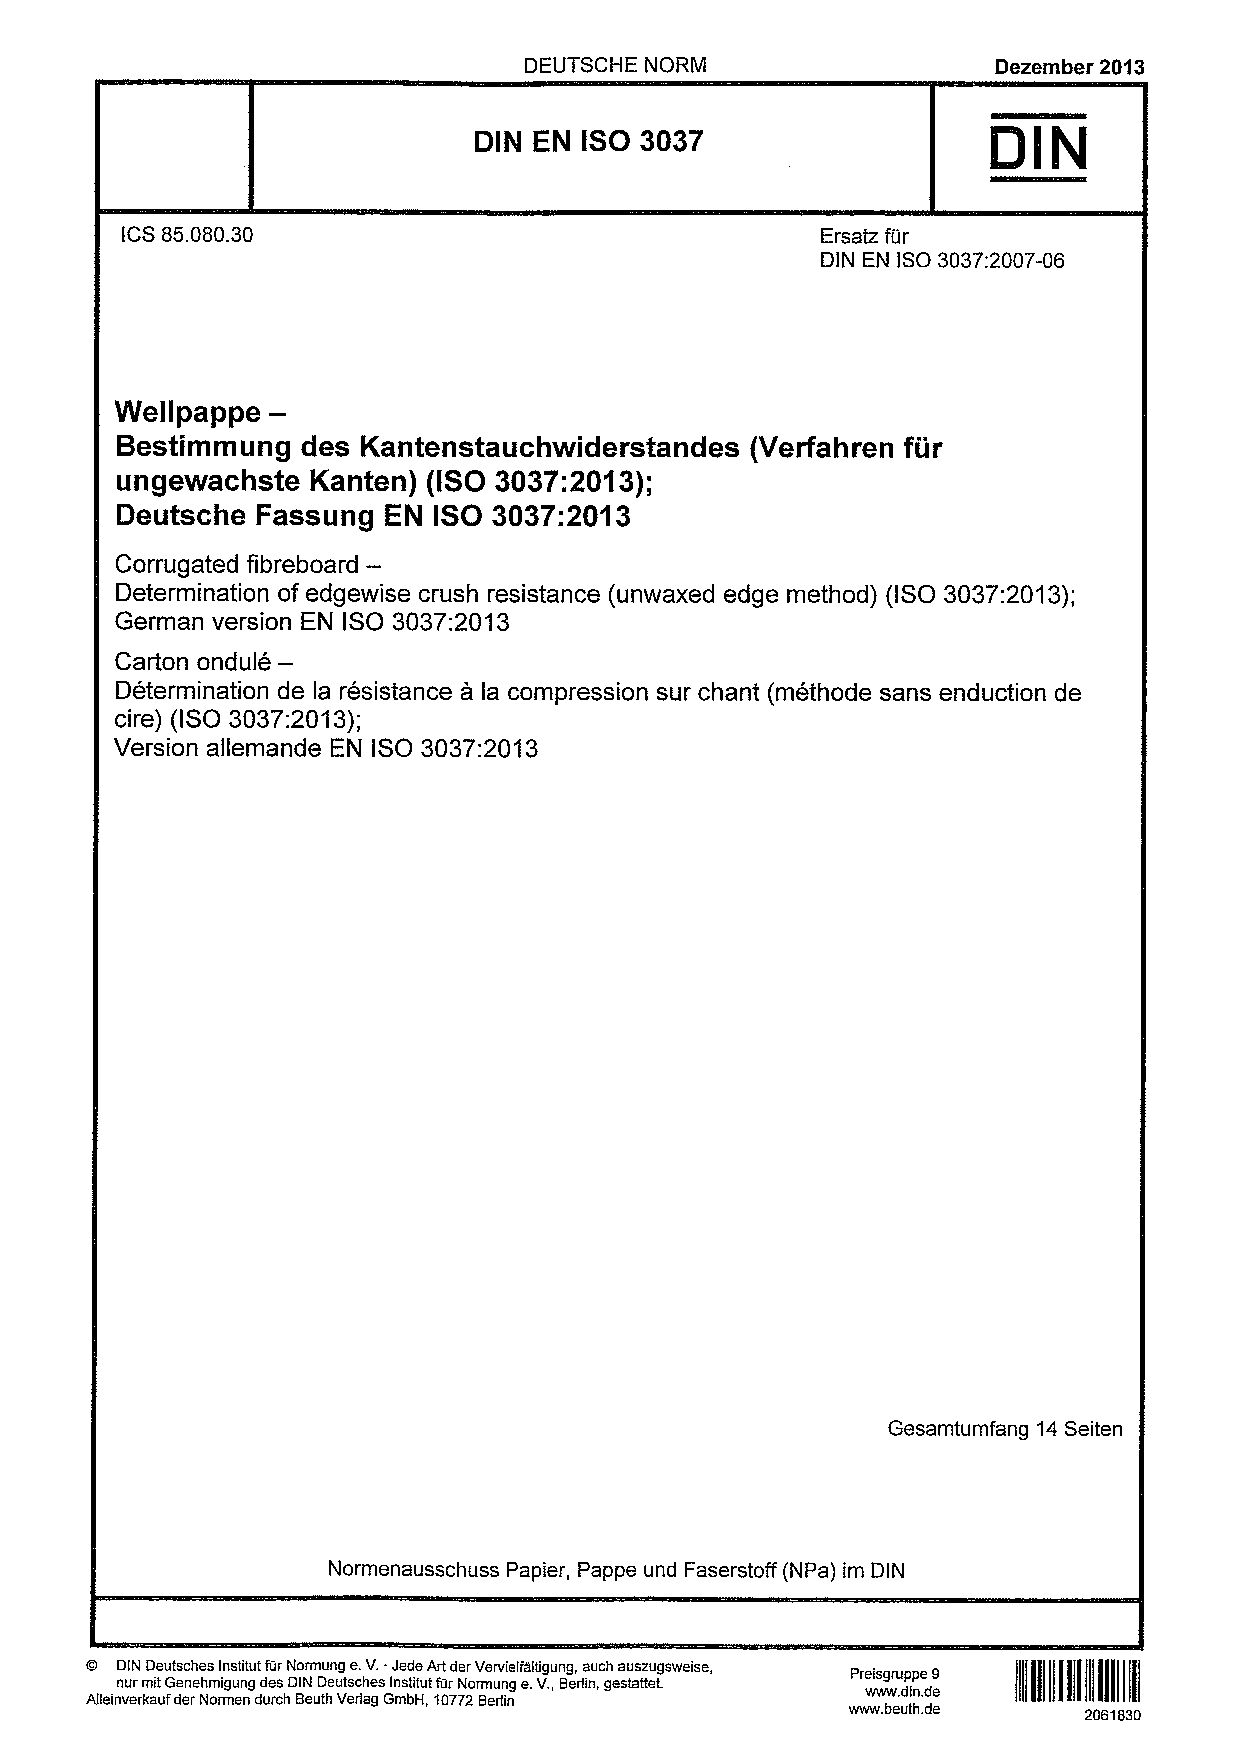 DIN EN ISO 3037:2013封面图